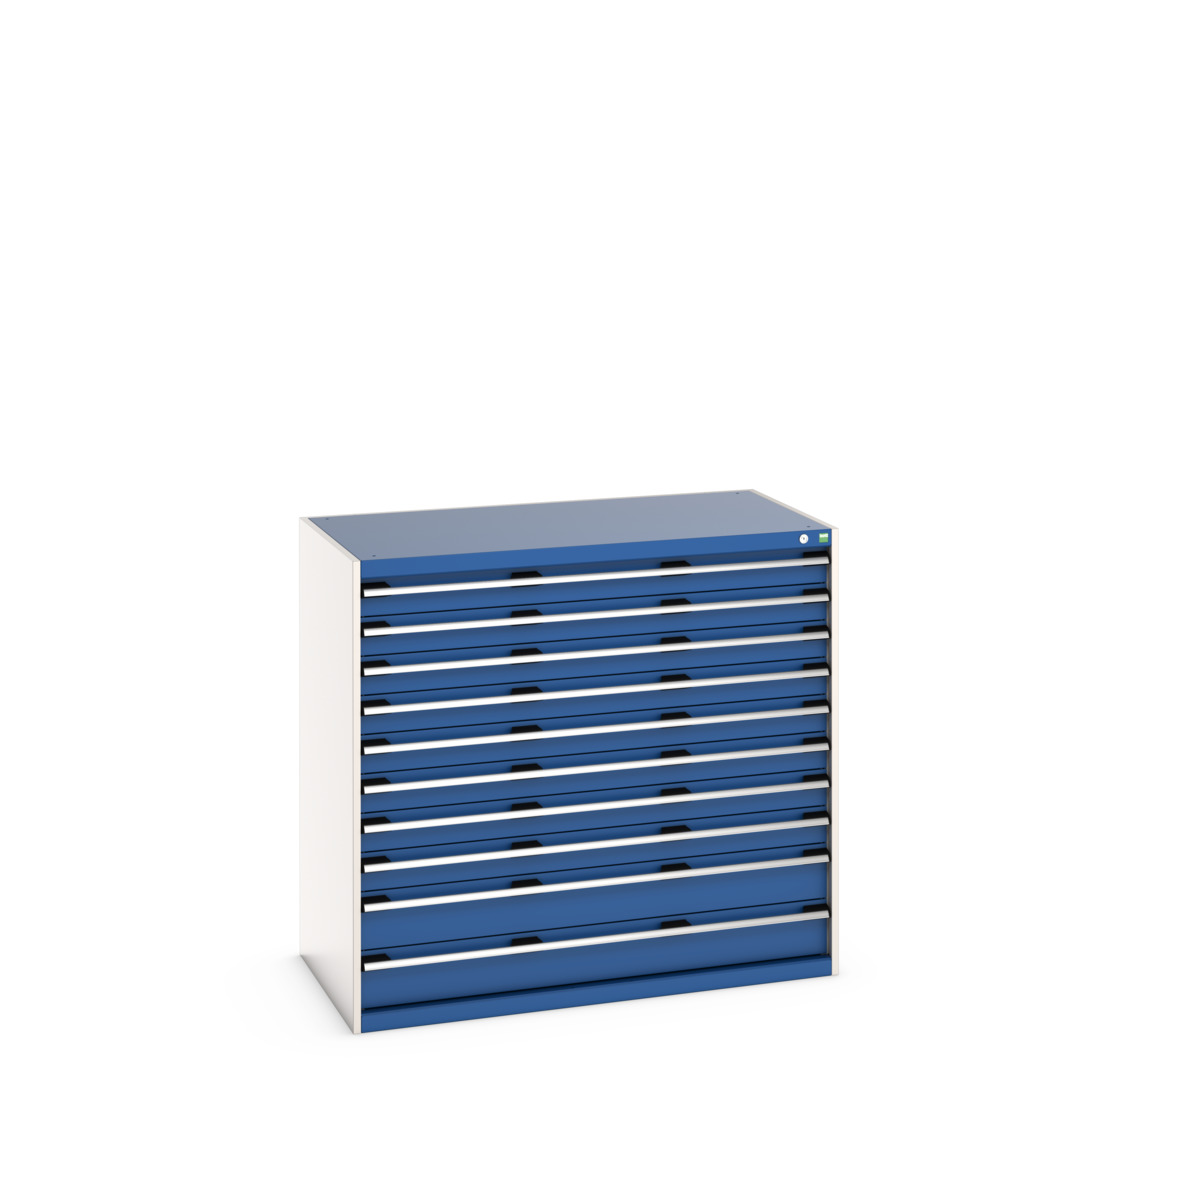 40030026.11V - cubio drawer cabinet